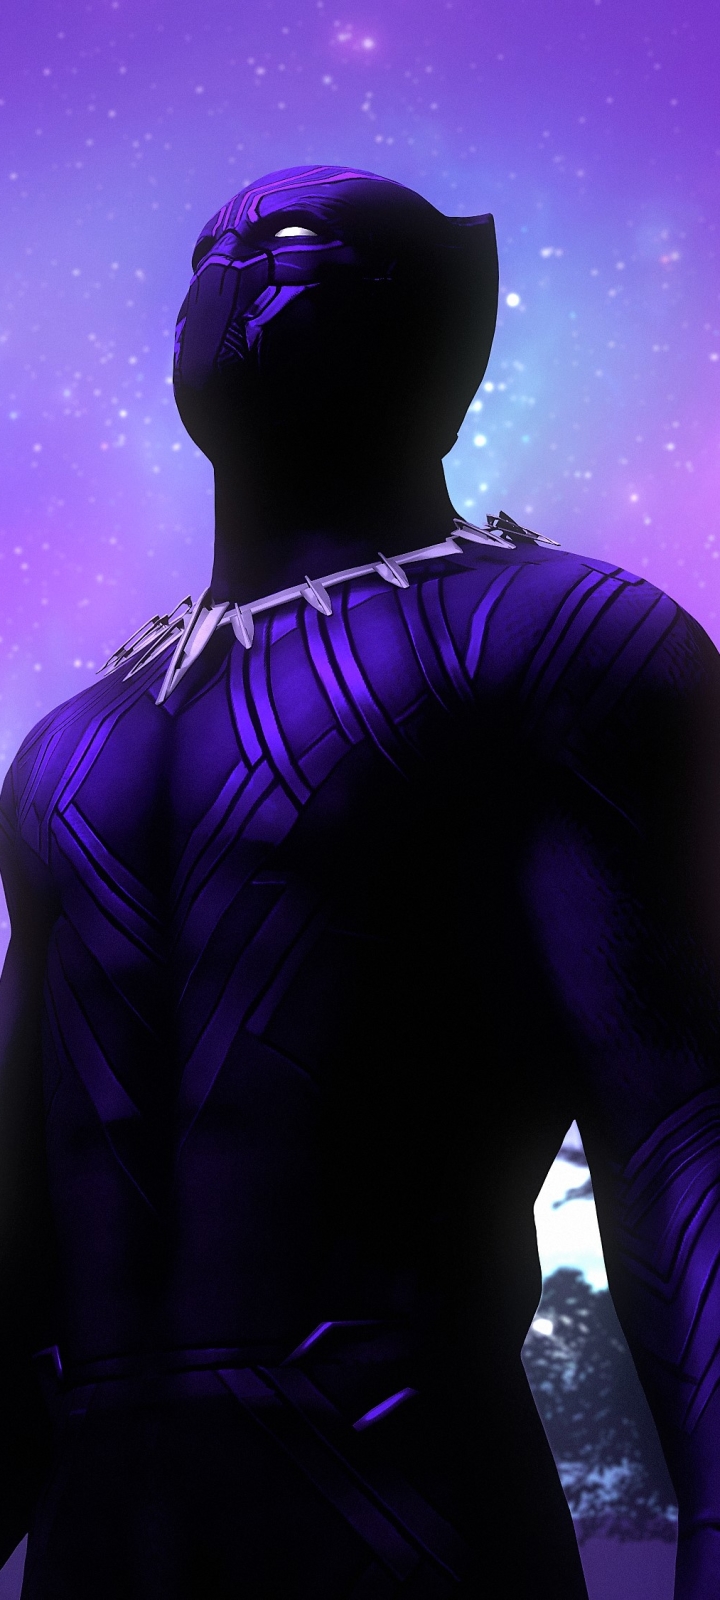 Descarga gratuita de fondo de pantalla para móvil de Violeta, Púrpura, Películas, Pantera Negra (Marvel Comics), Pantera Negra, Pantera Negra (Película).